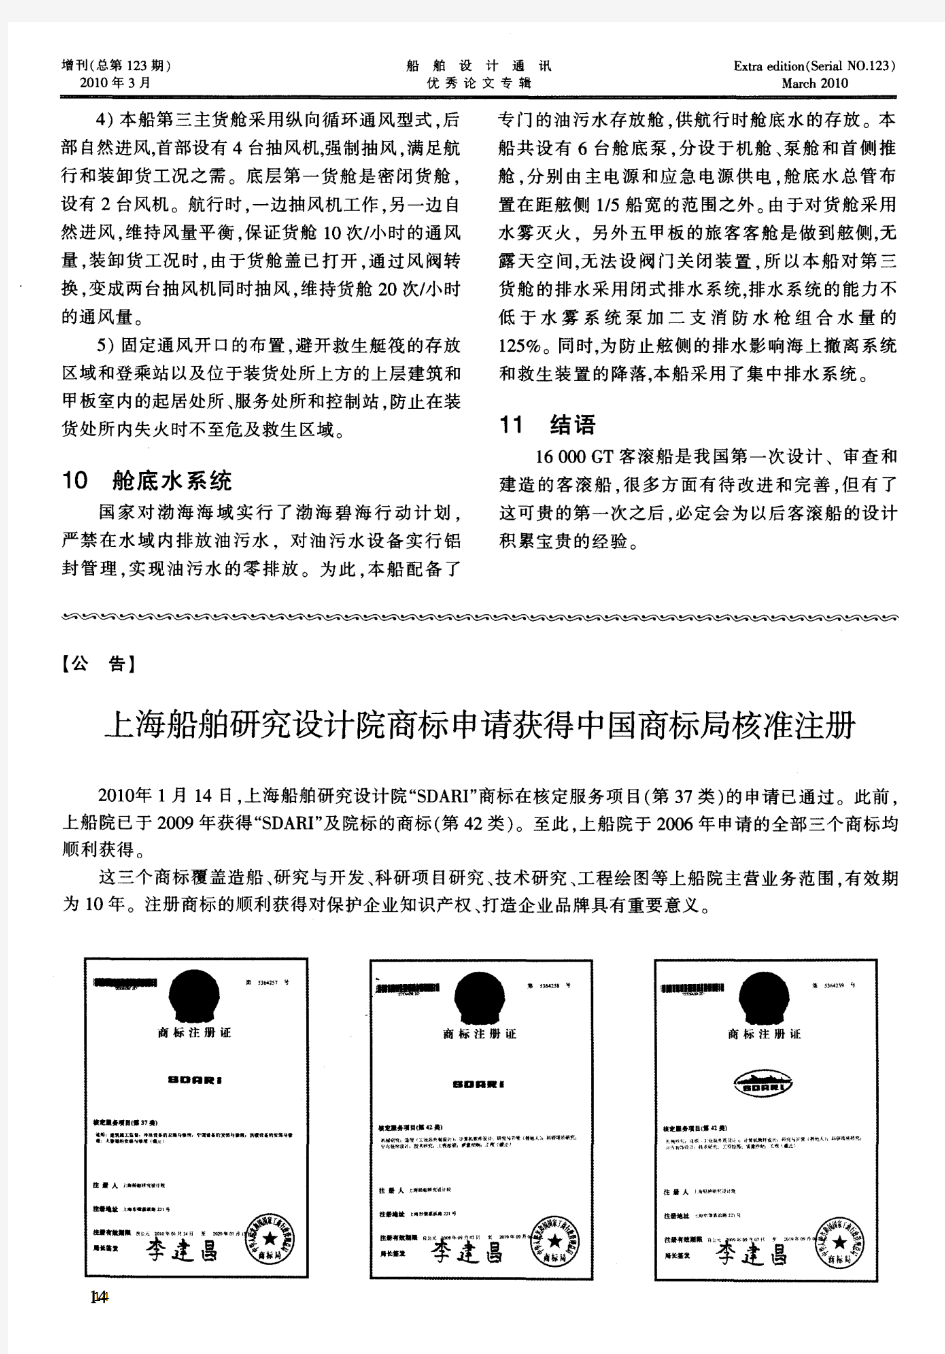 上海船舶研究设计院商标申请获得中国商标局核准注册